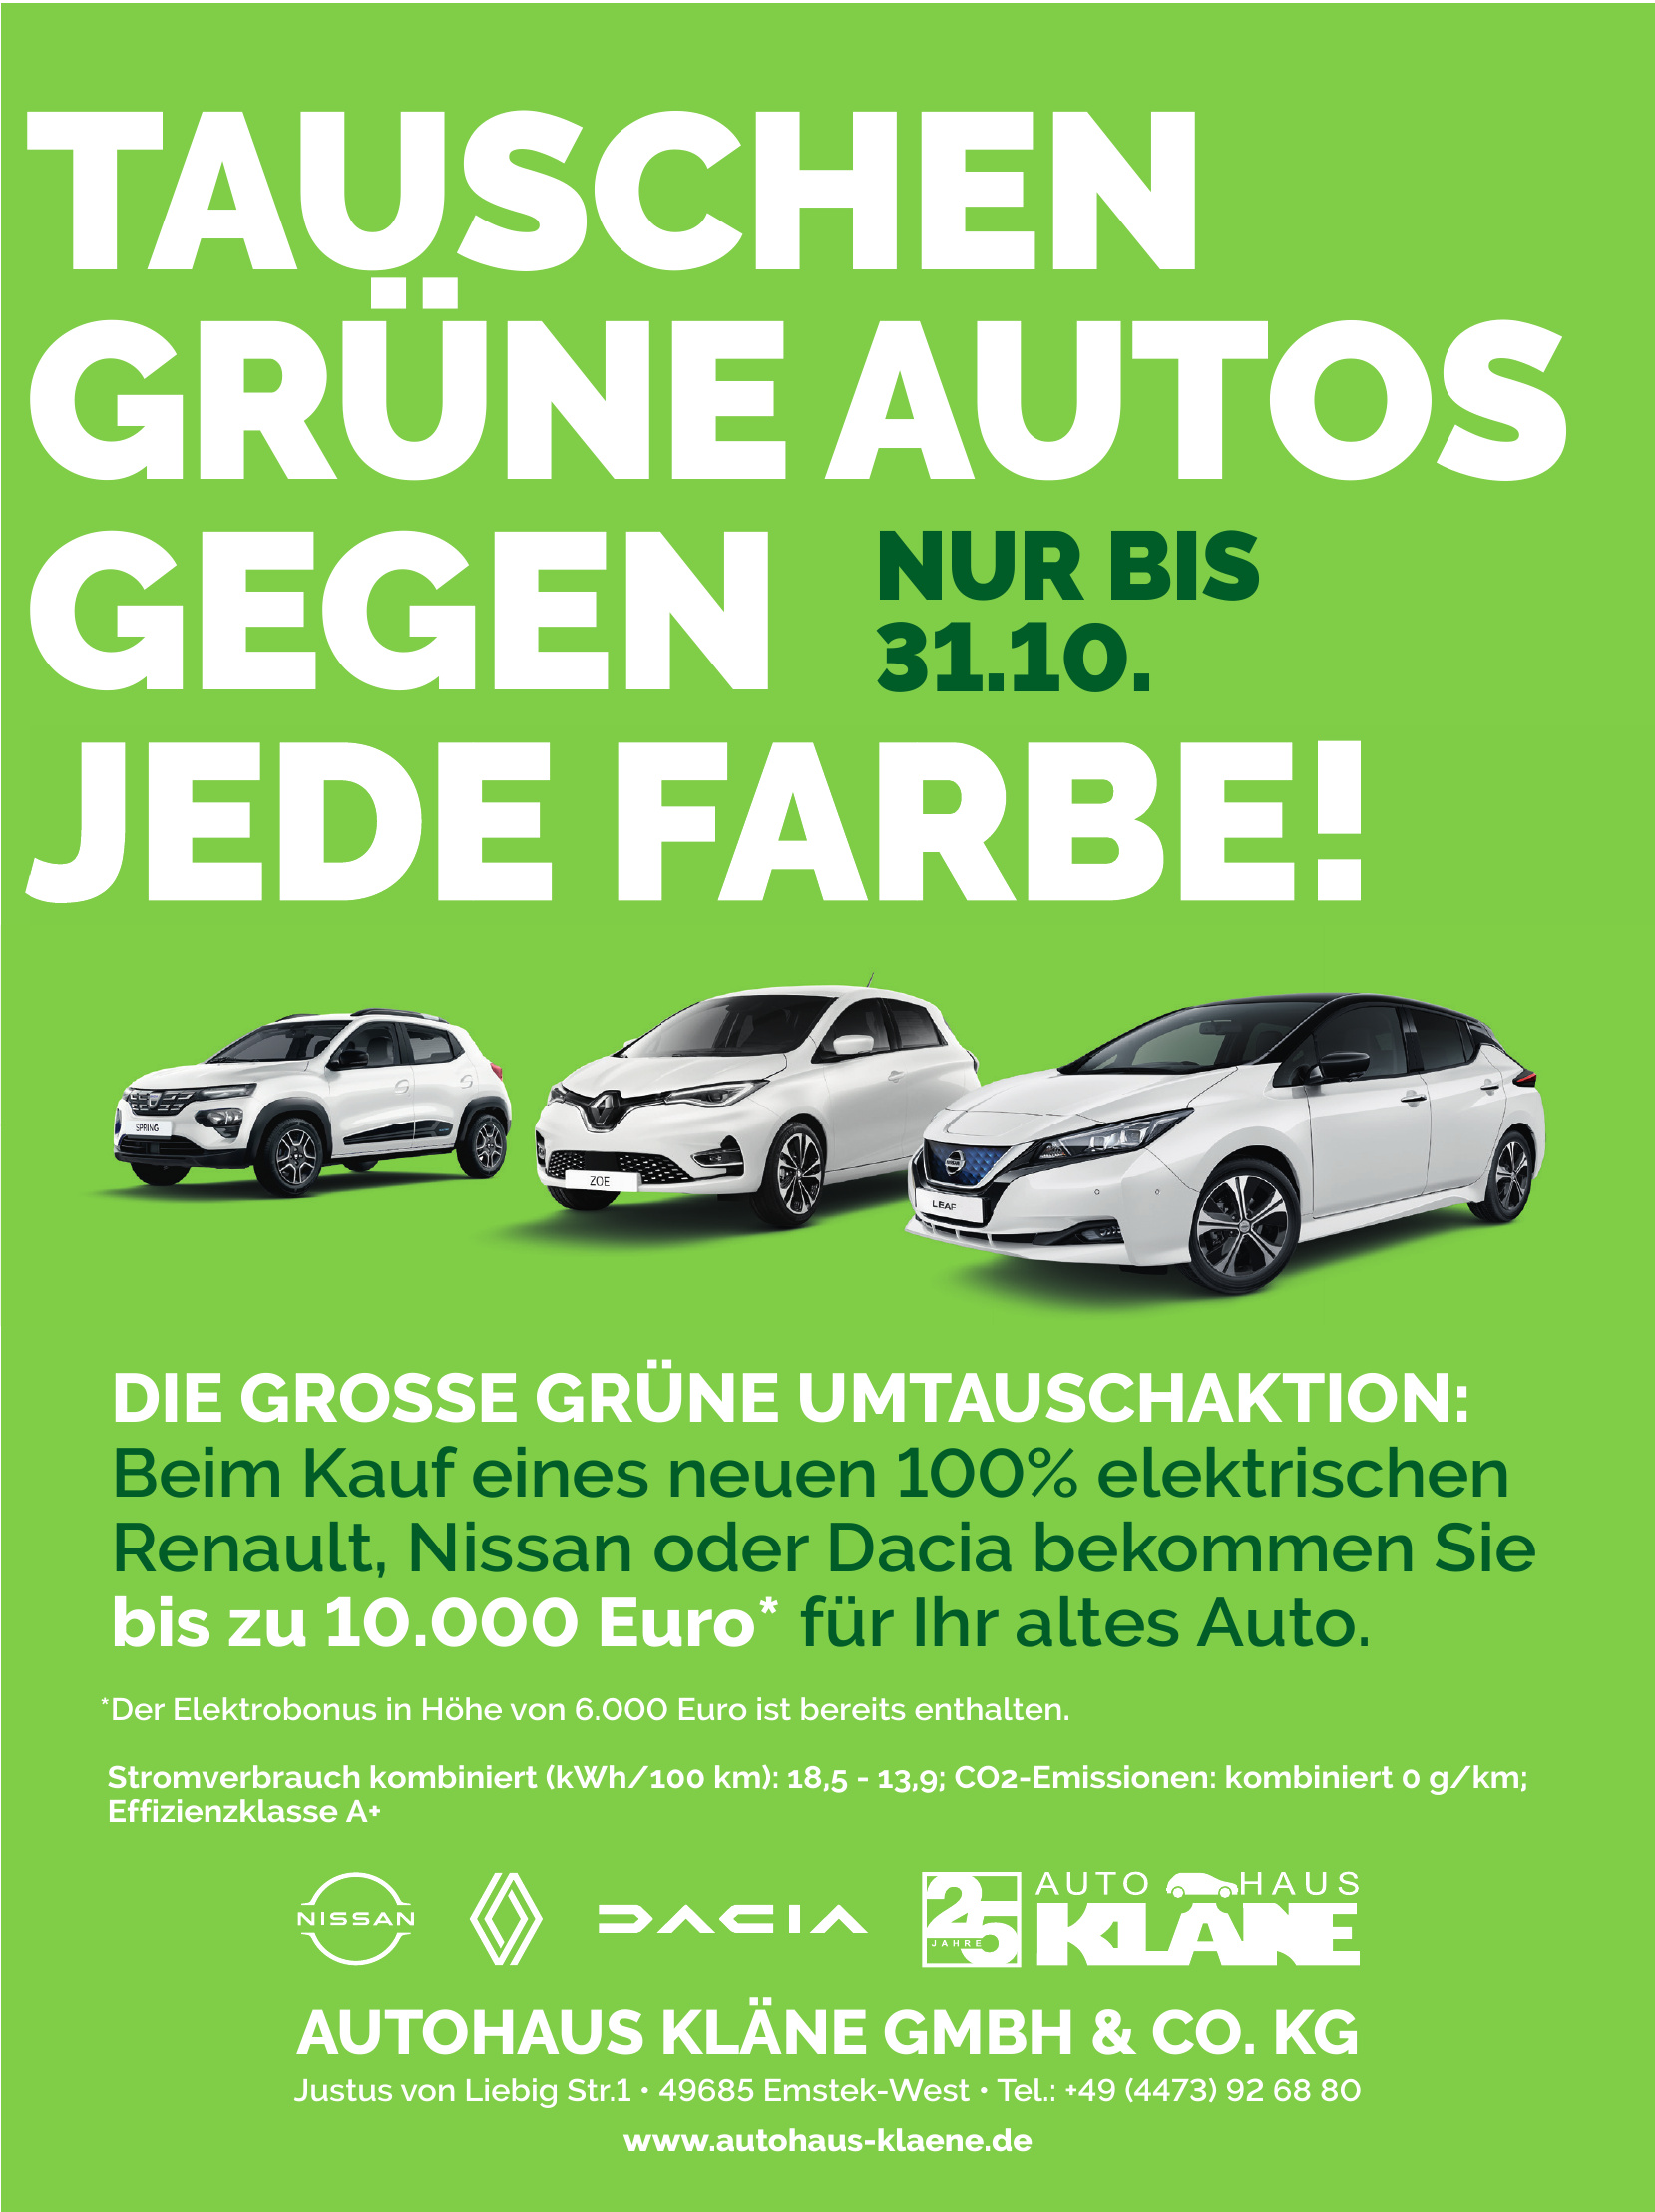 Autohaus Kläne GmbH & Co. KG